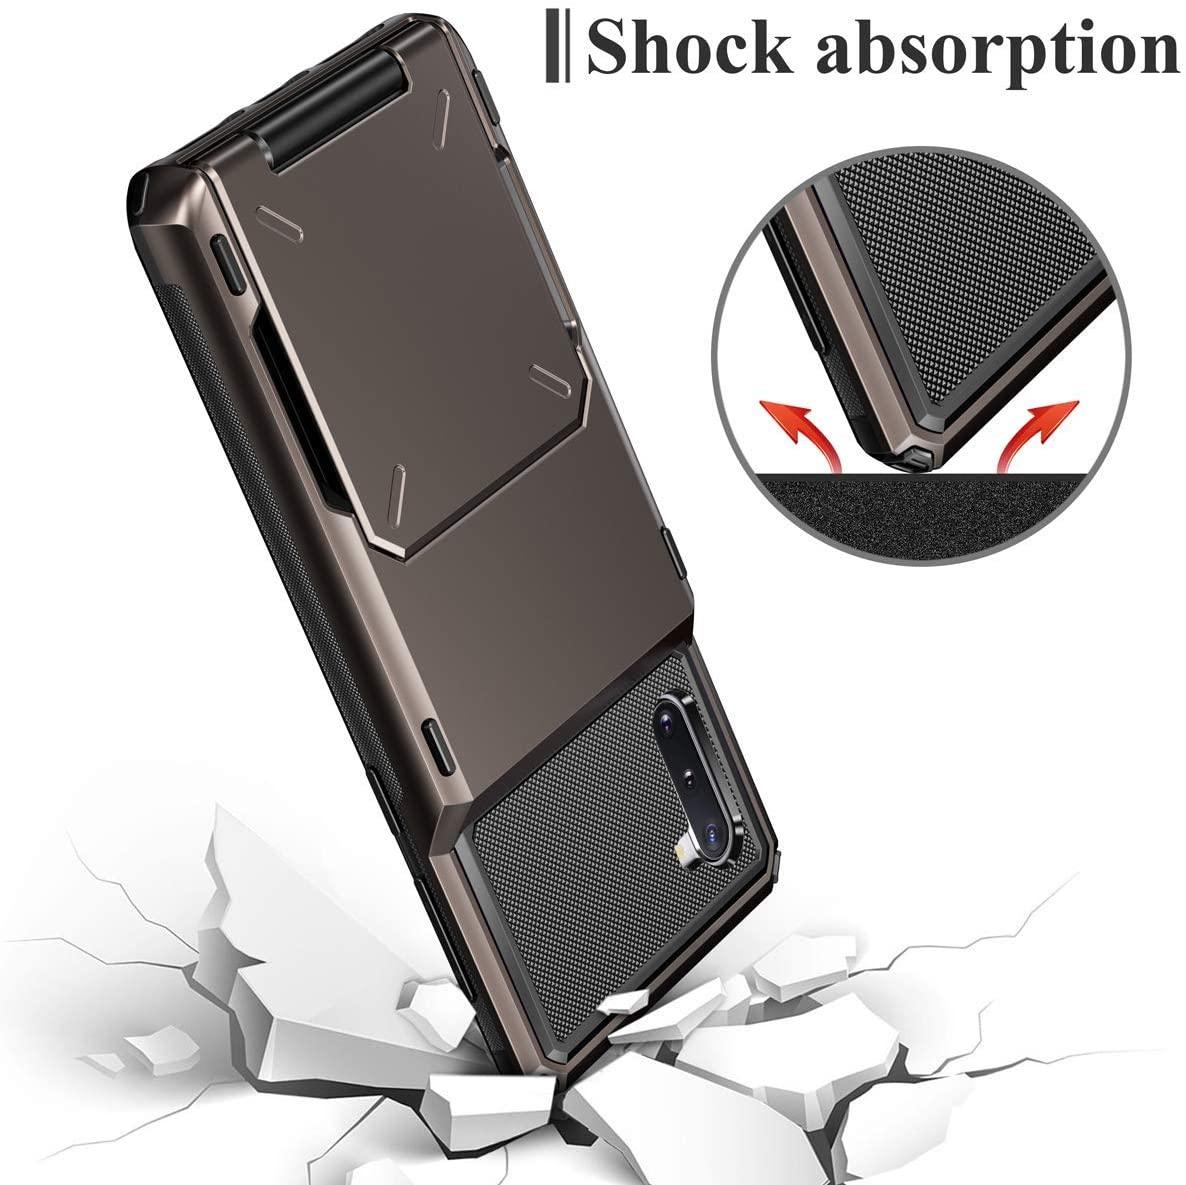 Slide Armor Wallet Card Holder Case For Samsung - White - SuperShop.Rocks